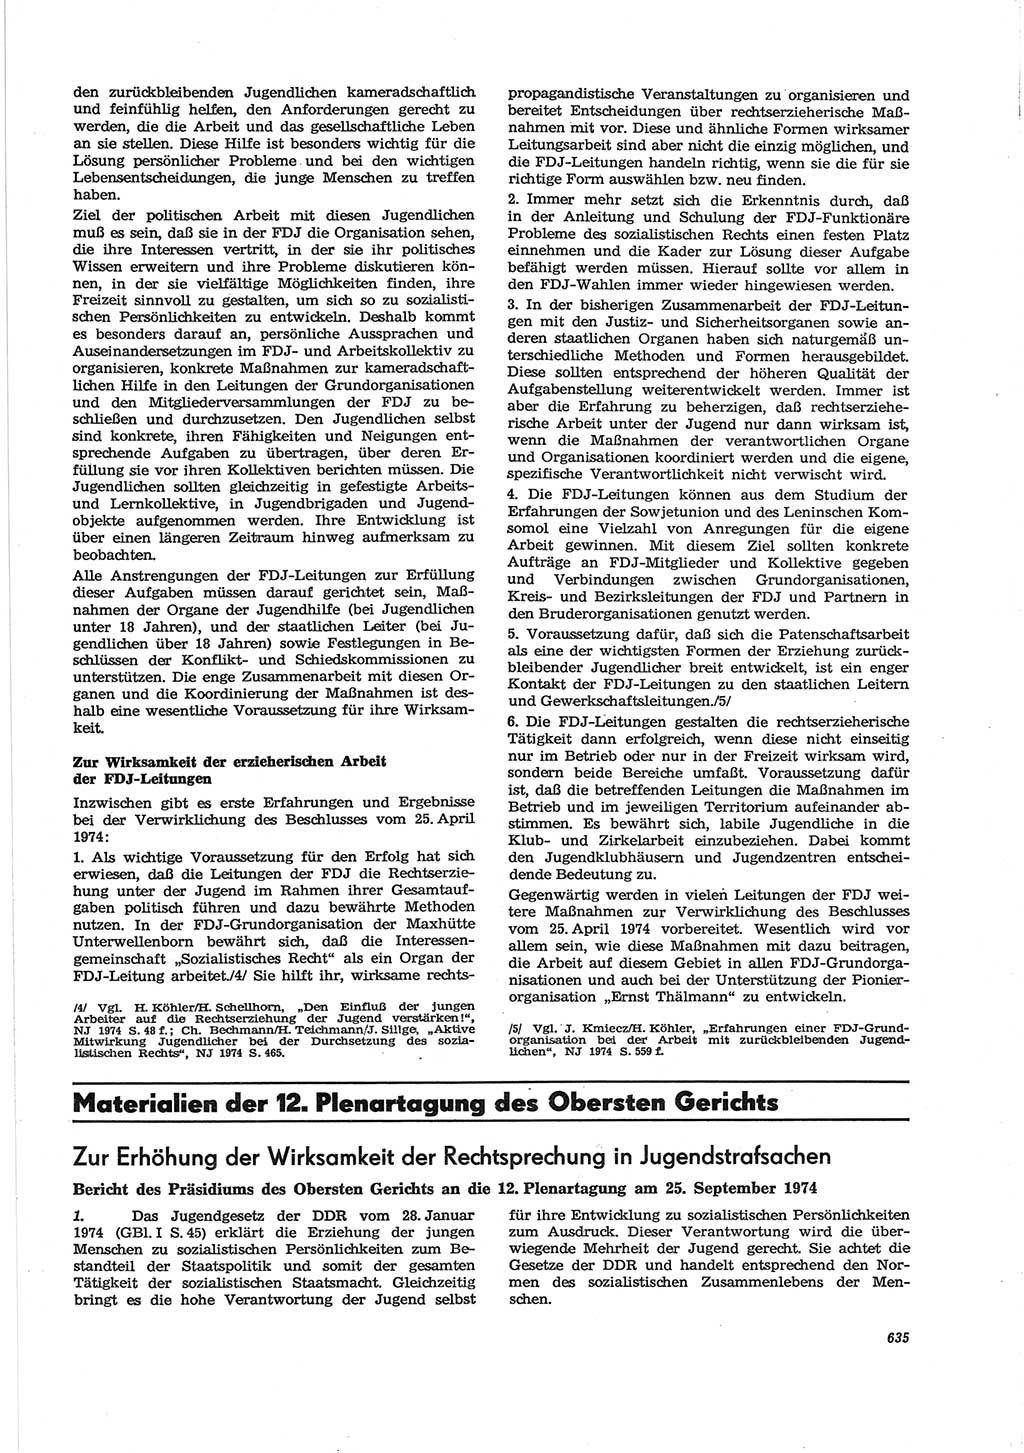 Neue Justiz (NJ), Zeitschrift für Recht und Rechtswissenschaft [Deutsche Demokratische Republik (DDR)], 28. Jahrgang 1974, Seite 635 (NJ DDR 1974, S. 635)